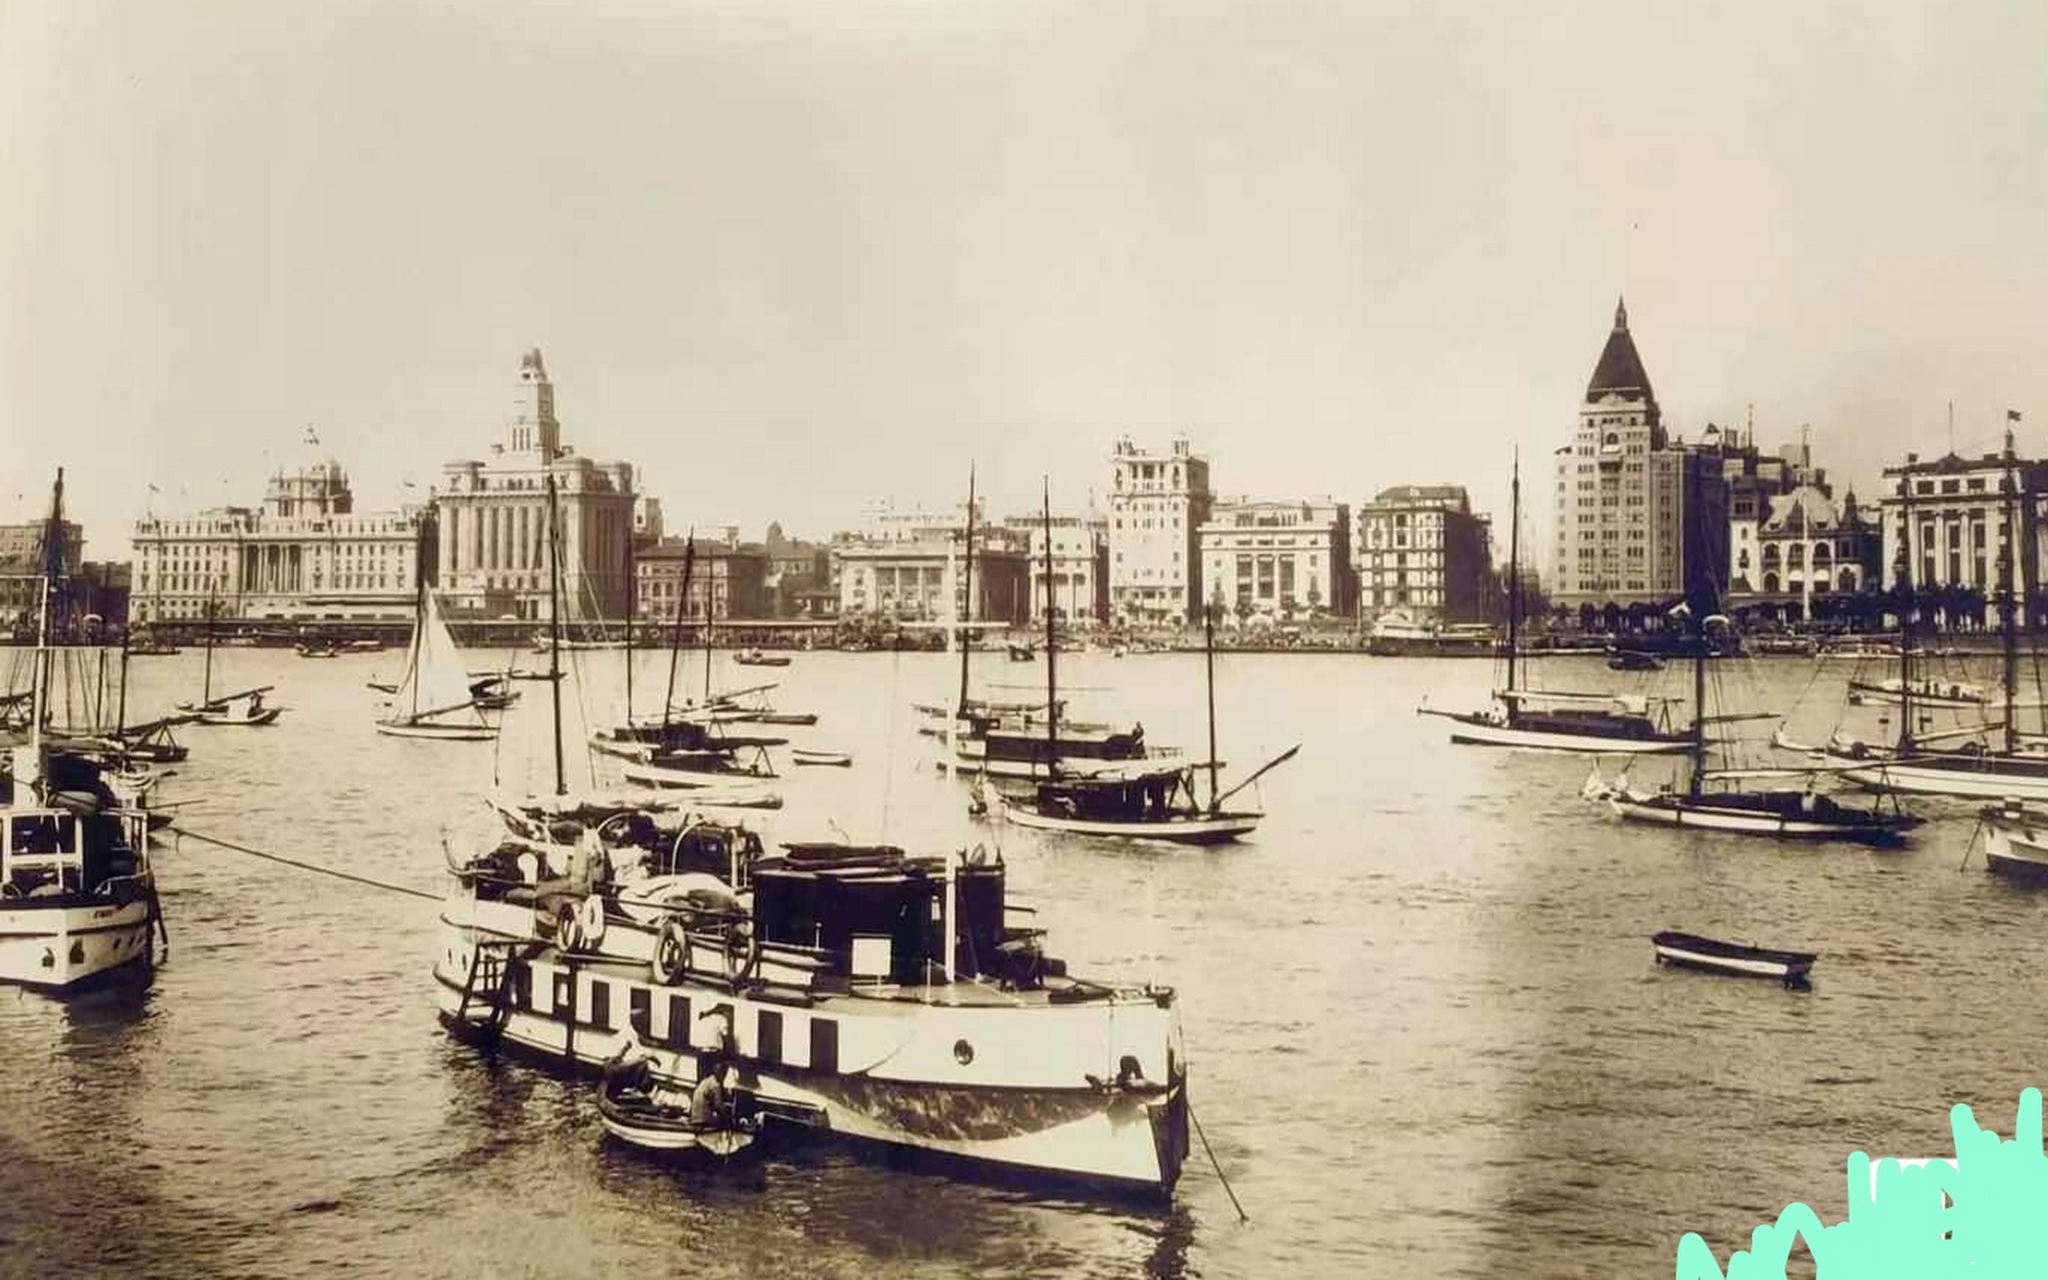 民国时期上海著名建筑图片